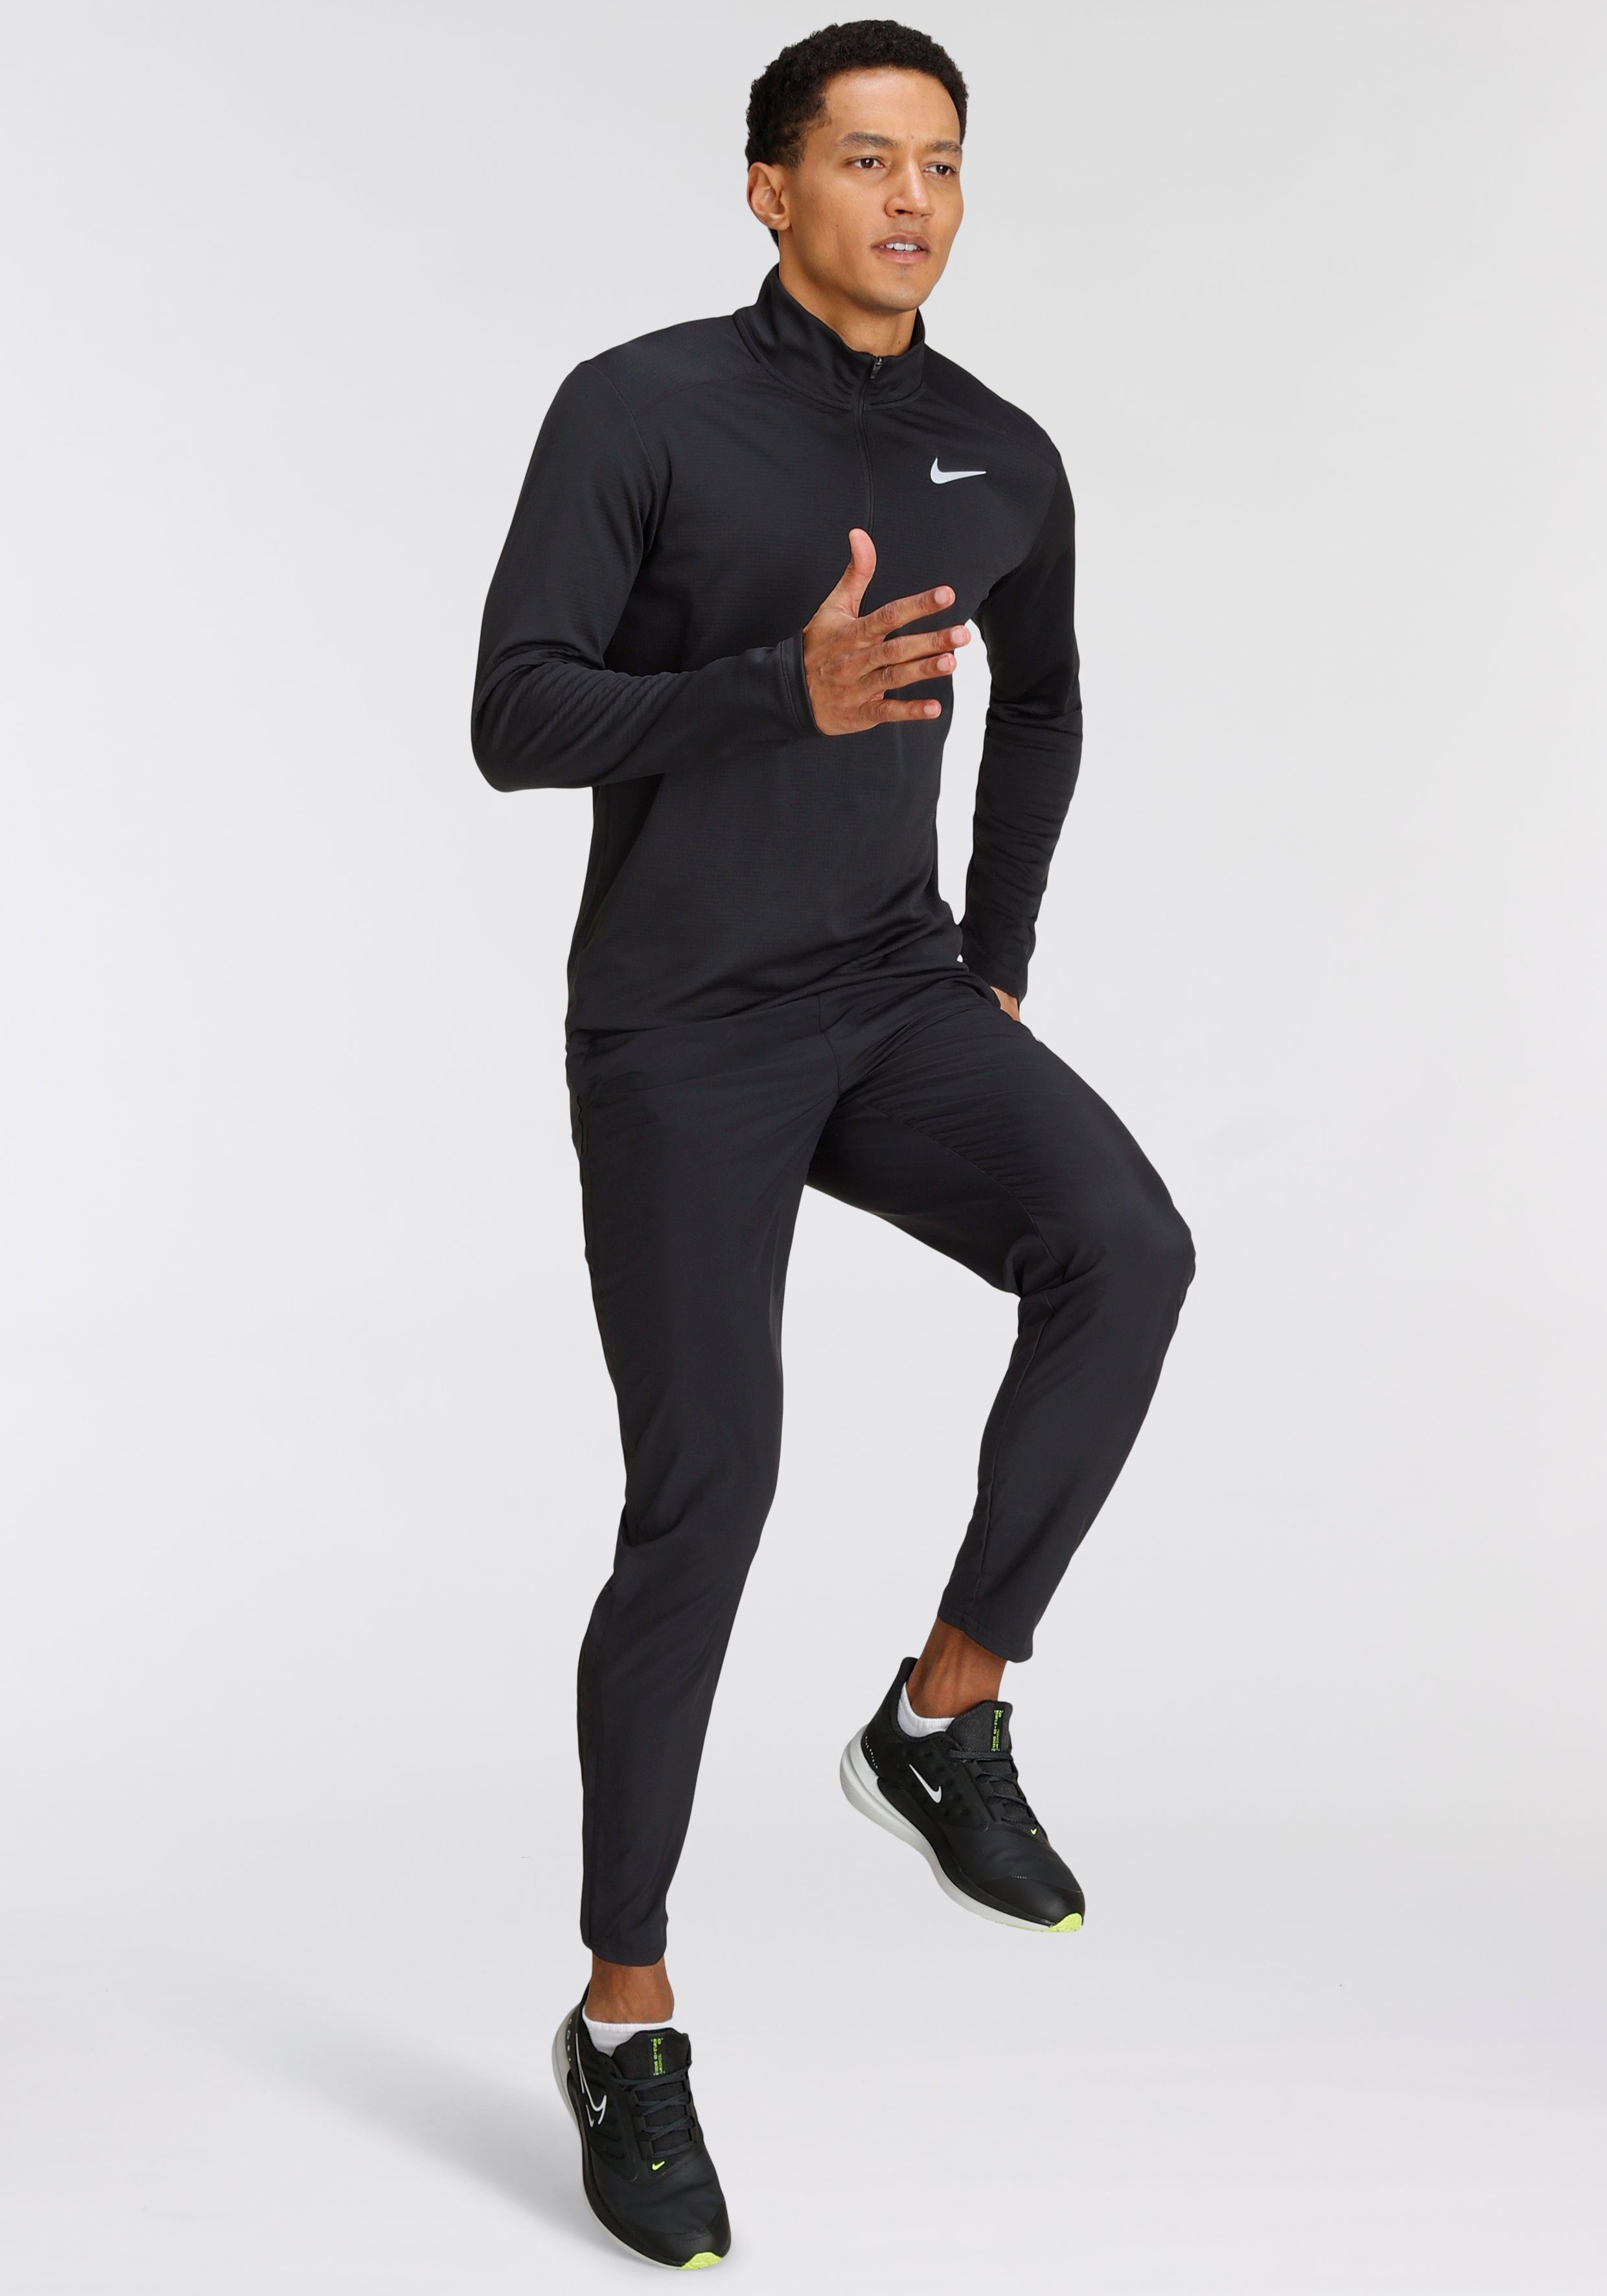 Nike RUNNING Laufshirt schwarz TOP PACER MEN'S 1/-ZIP